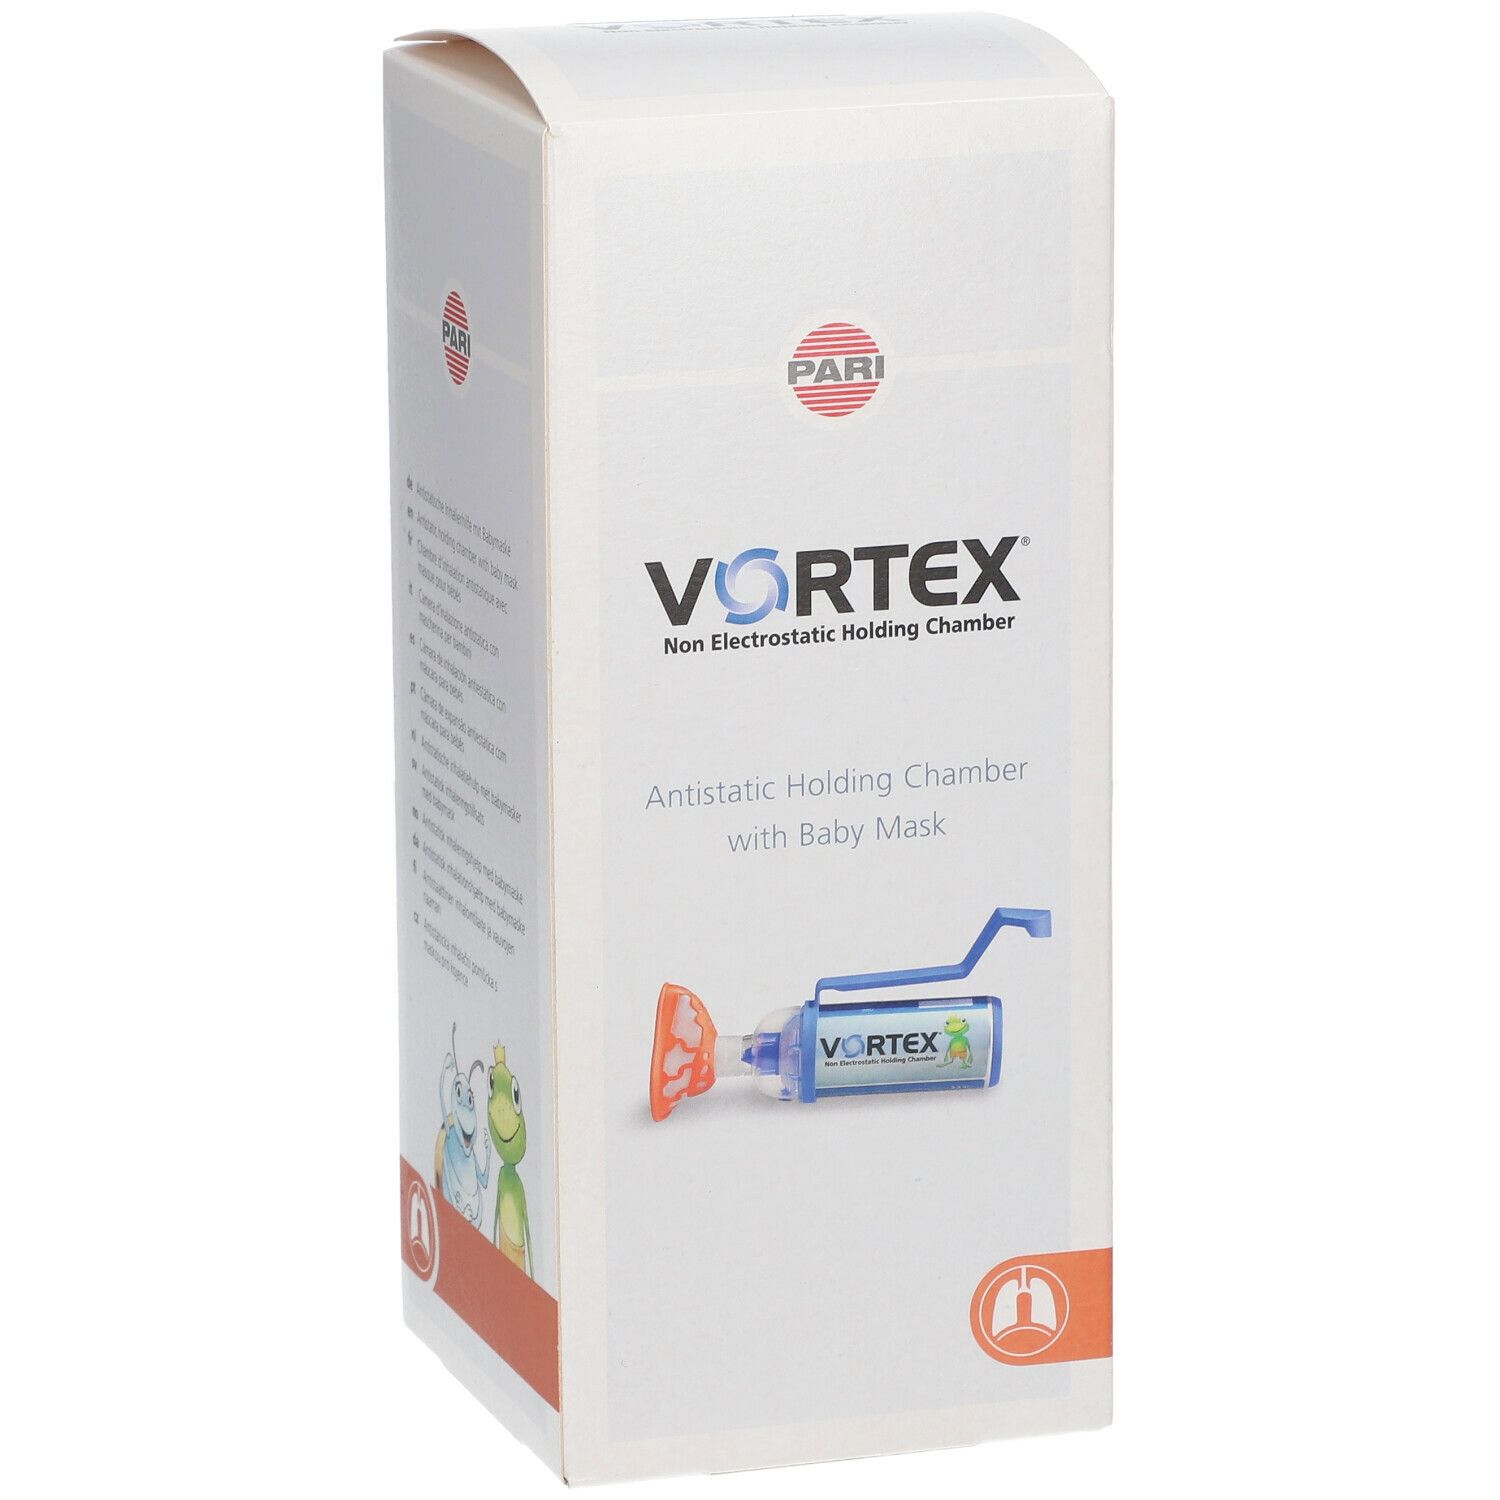 VORTEX® Antistatische Inhalierhilfe mit Babymaske